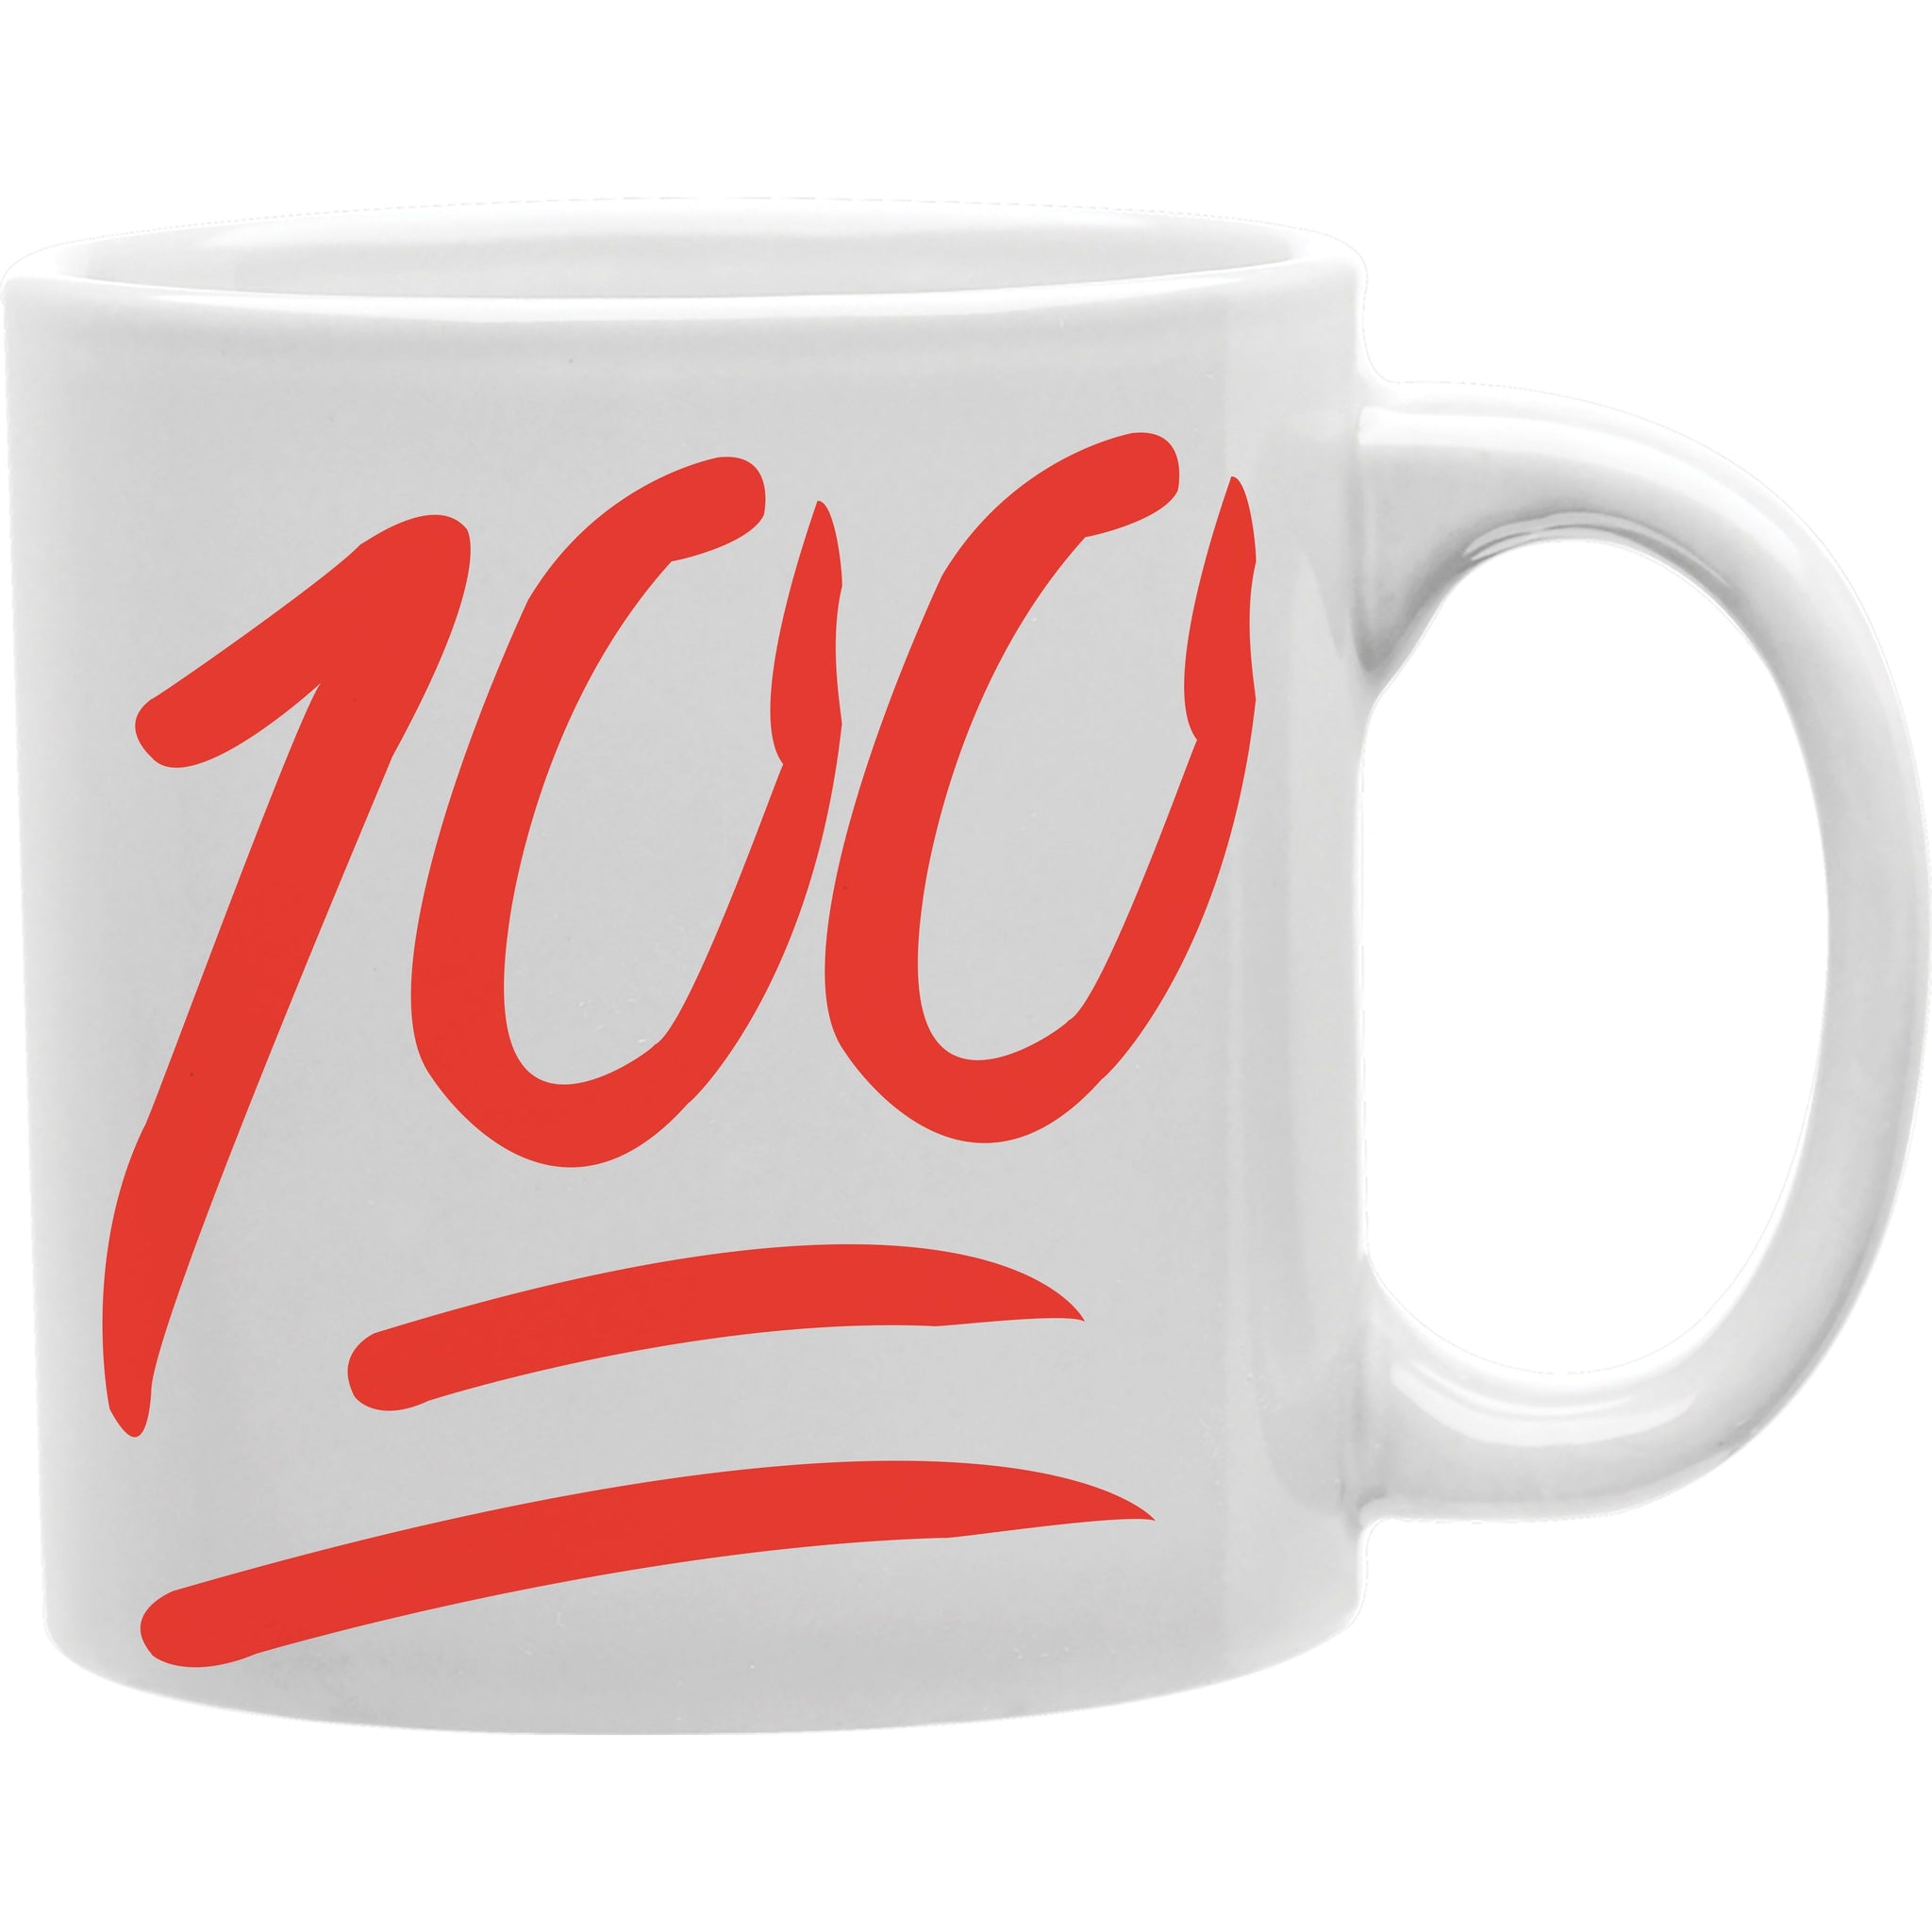 Emoji 100 Mug By everydayMug  Coffee and Tea Ceramic  Mug 11oz